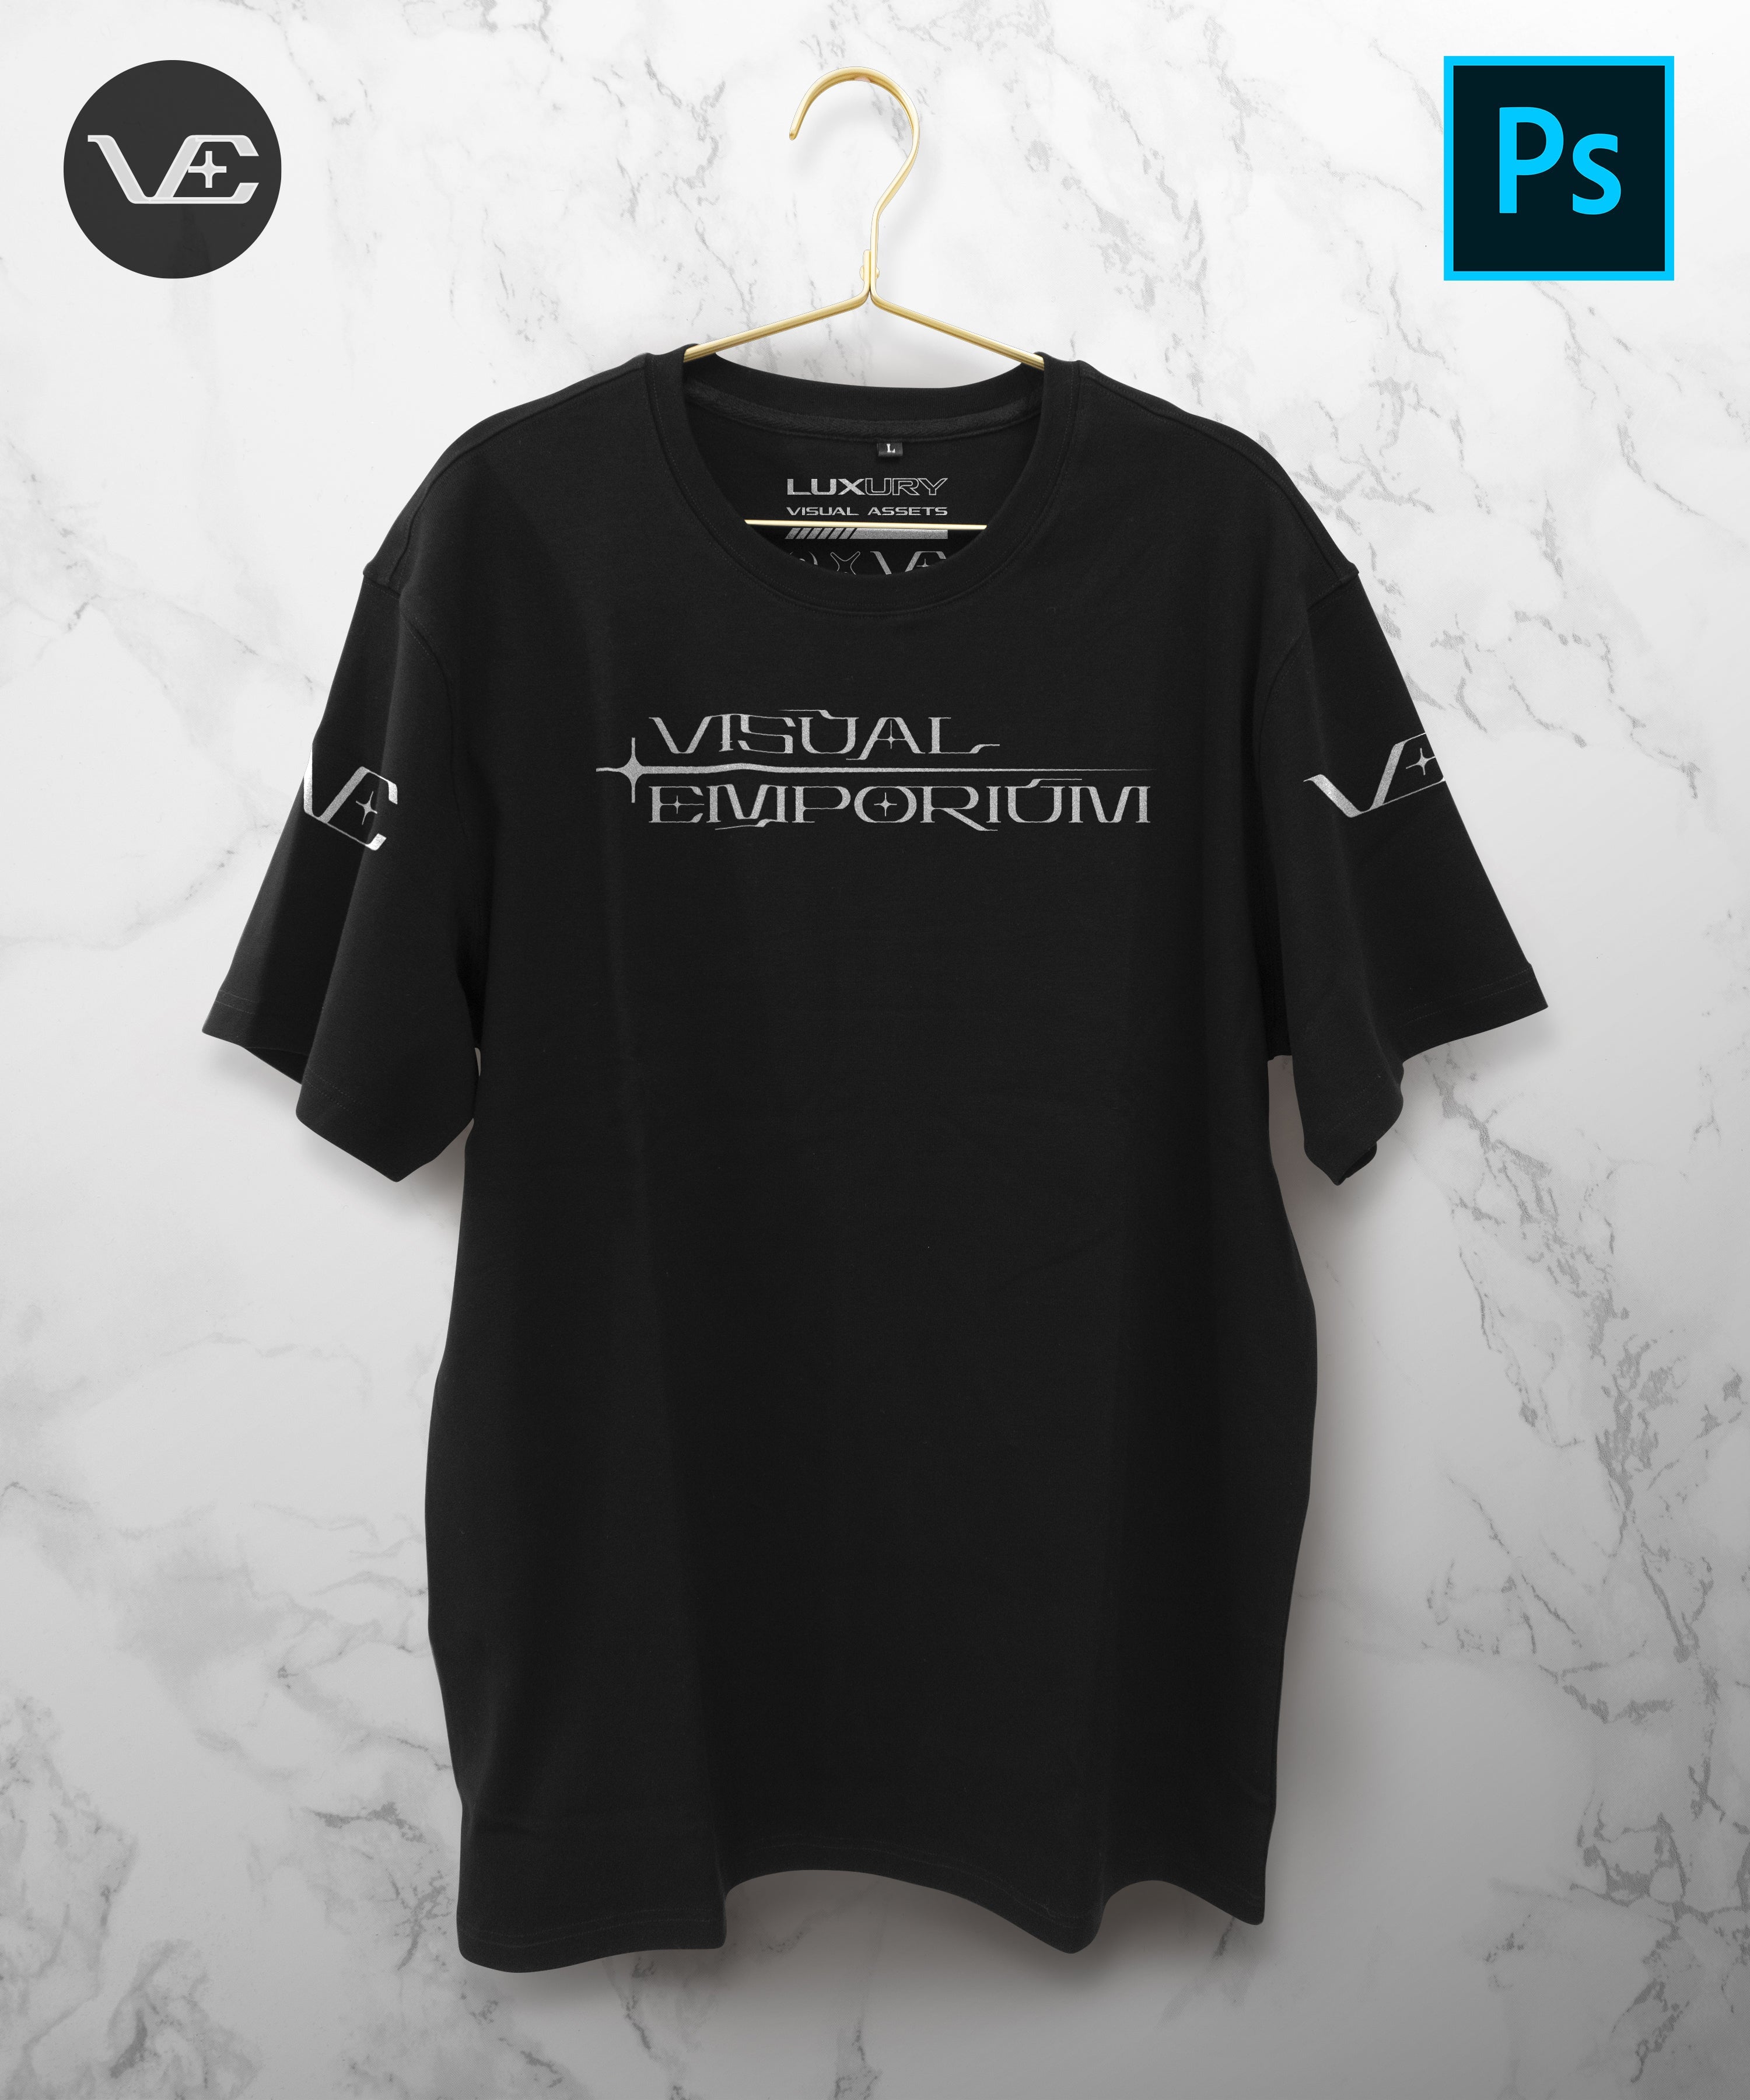 Hanging T-Shirt - Premium Digital Mockup 